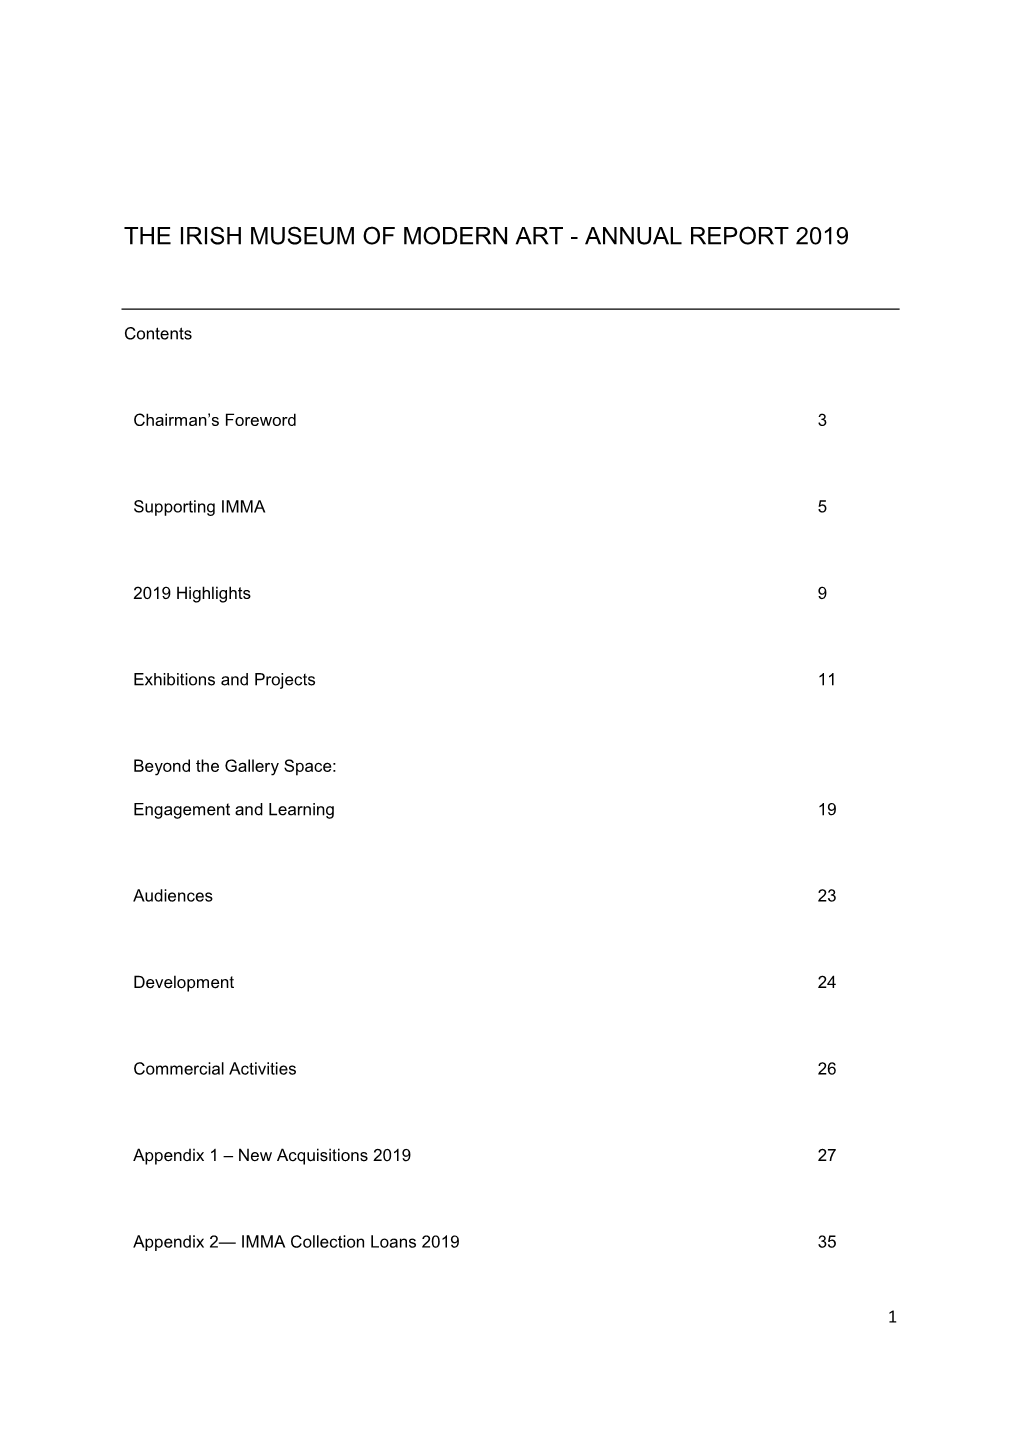 The Irish Museum of Modern Art - Annual Report 2019